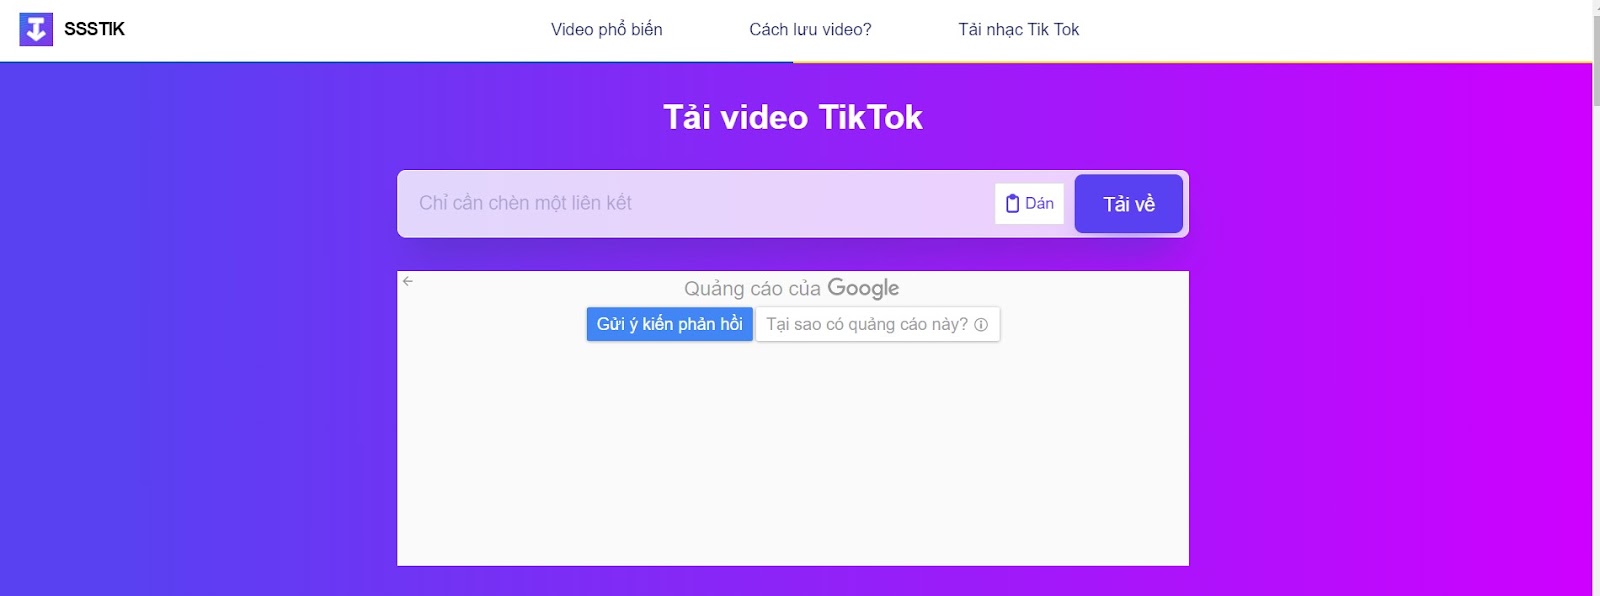 SSSTikTok chỉ cho phép bạn tải video tiktok công khai